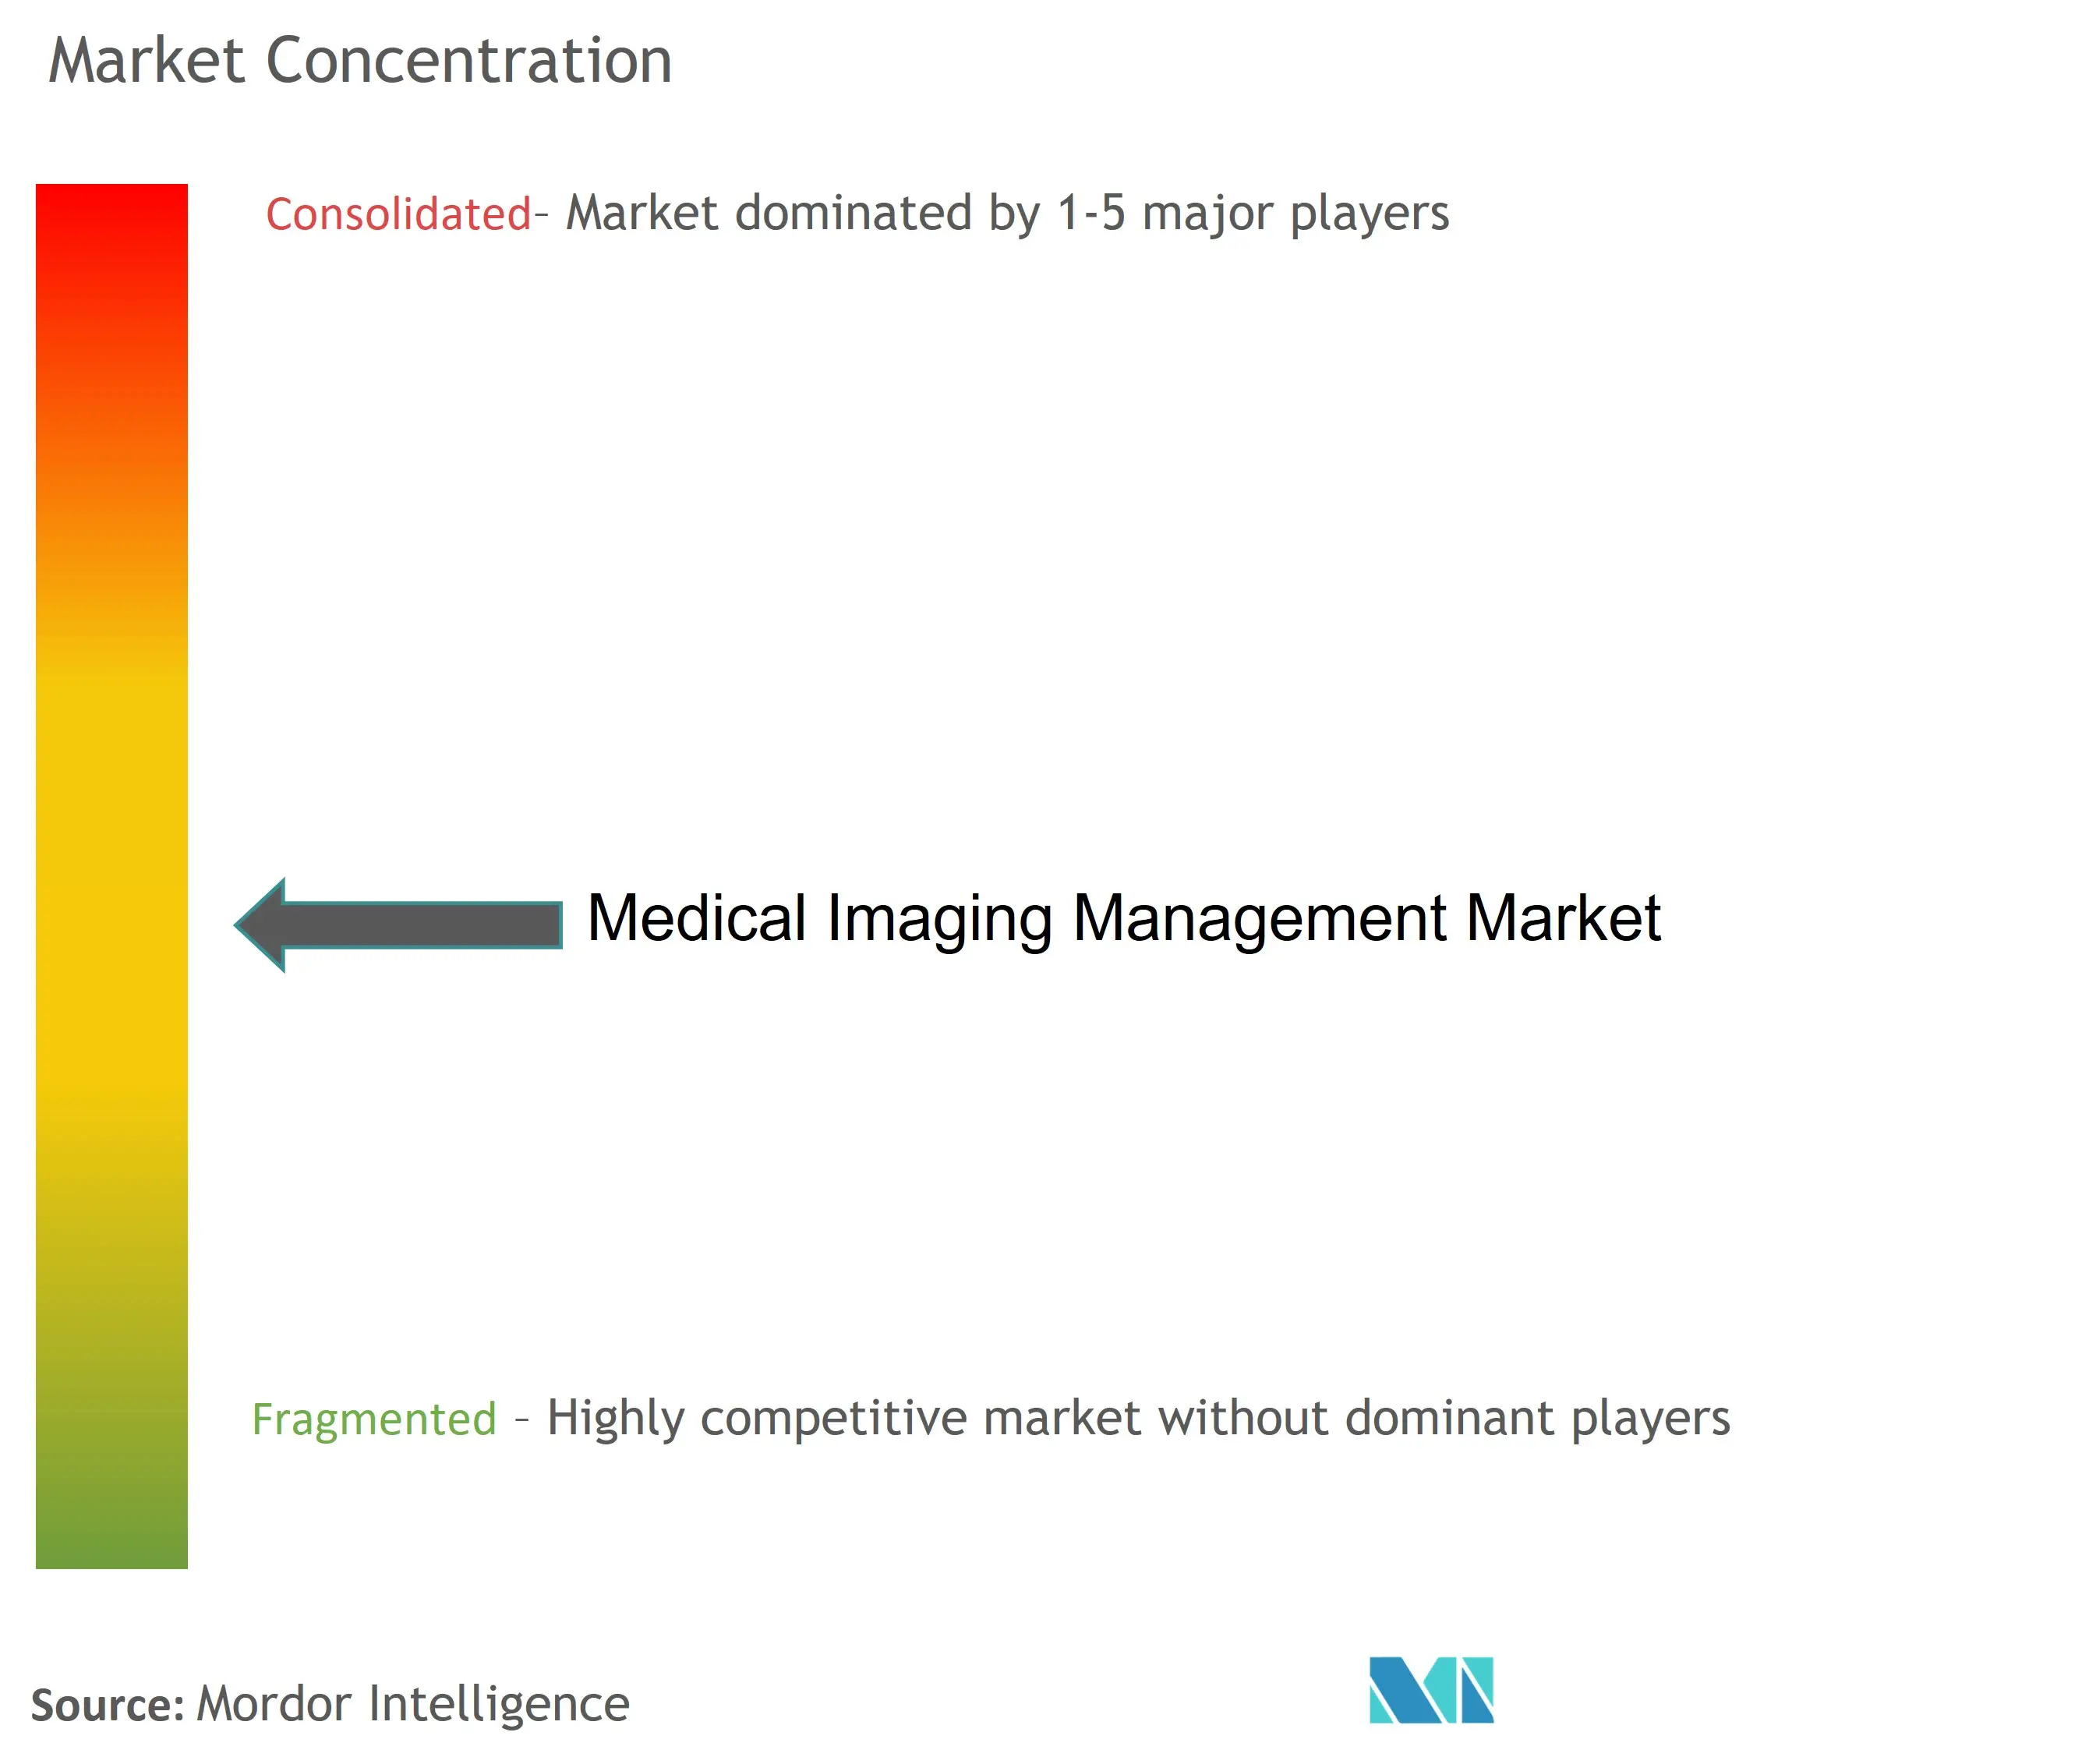 Medical Imaging Management Market Concentration